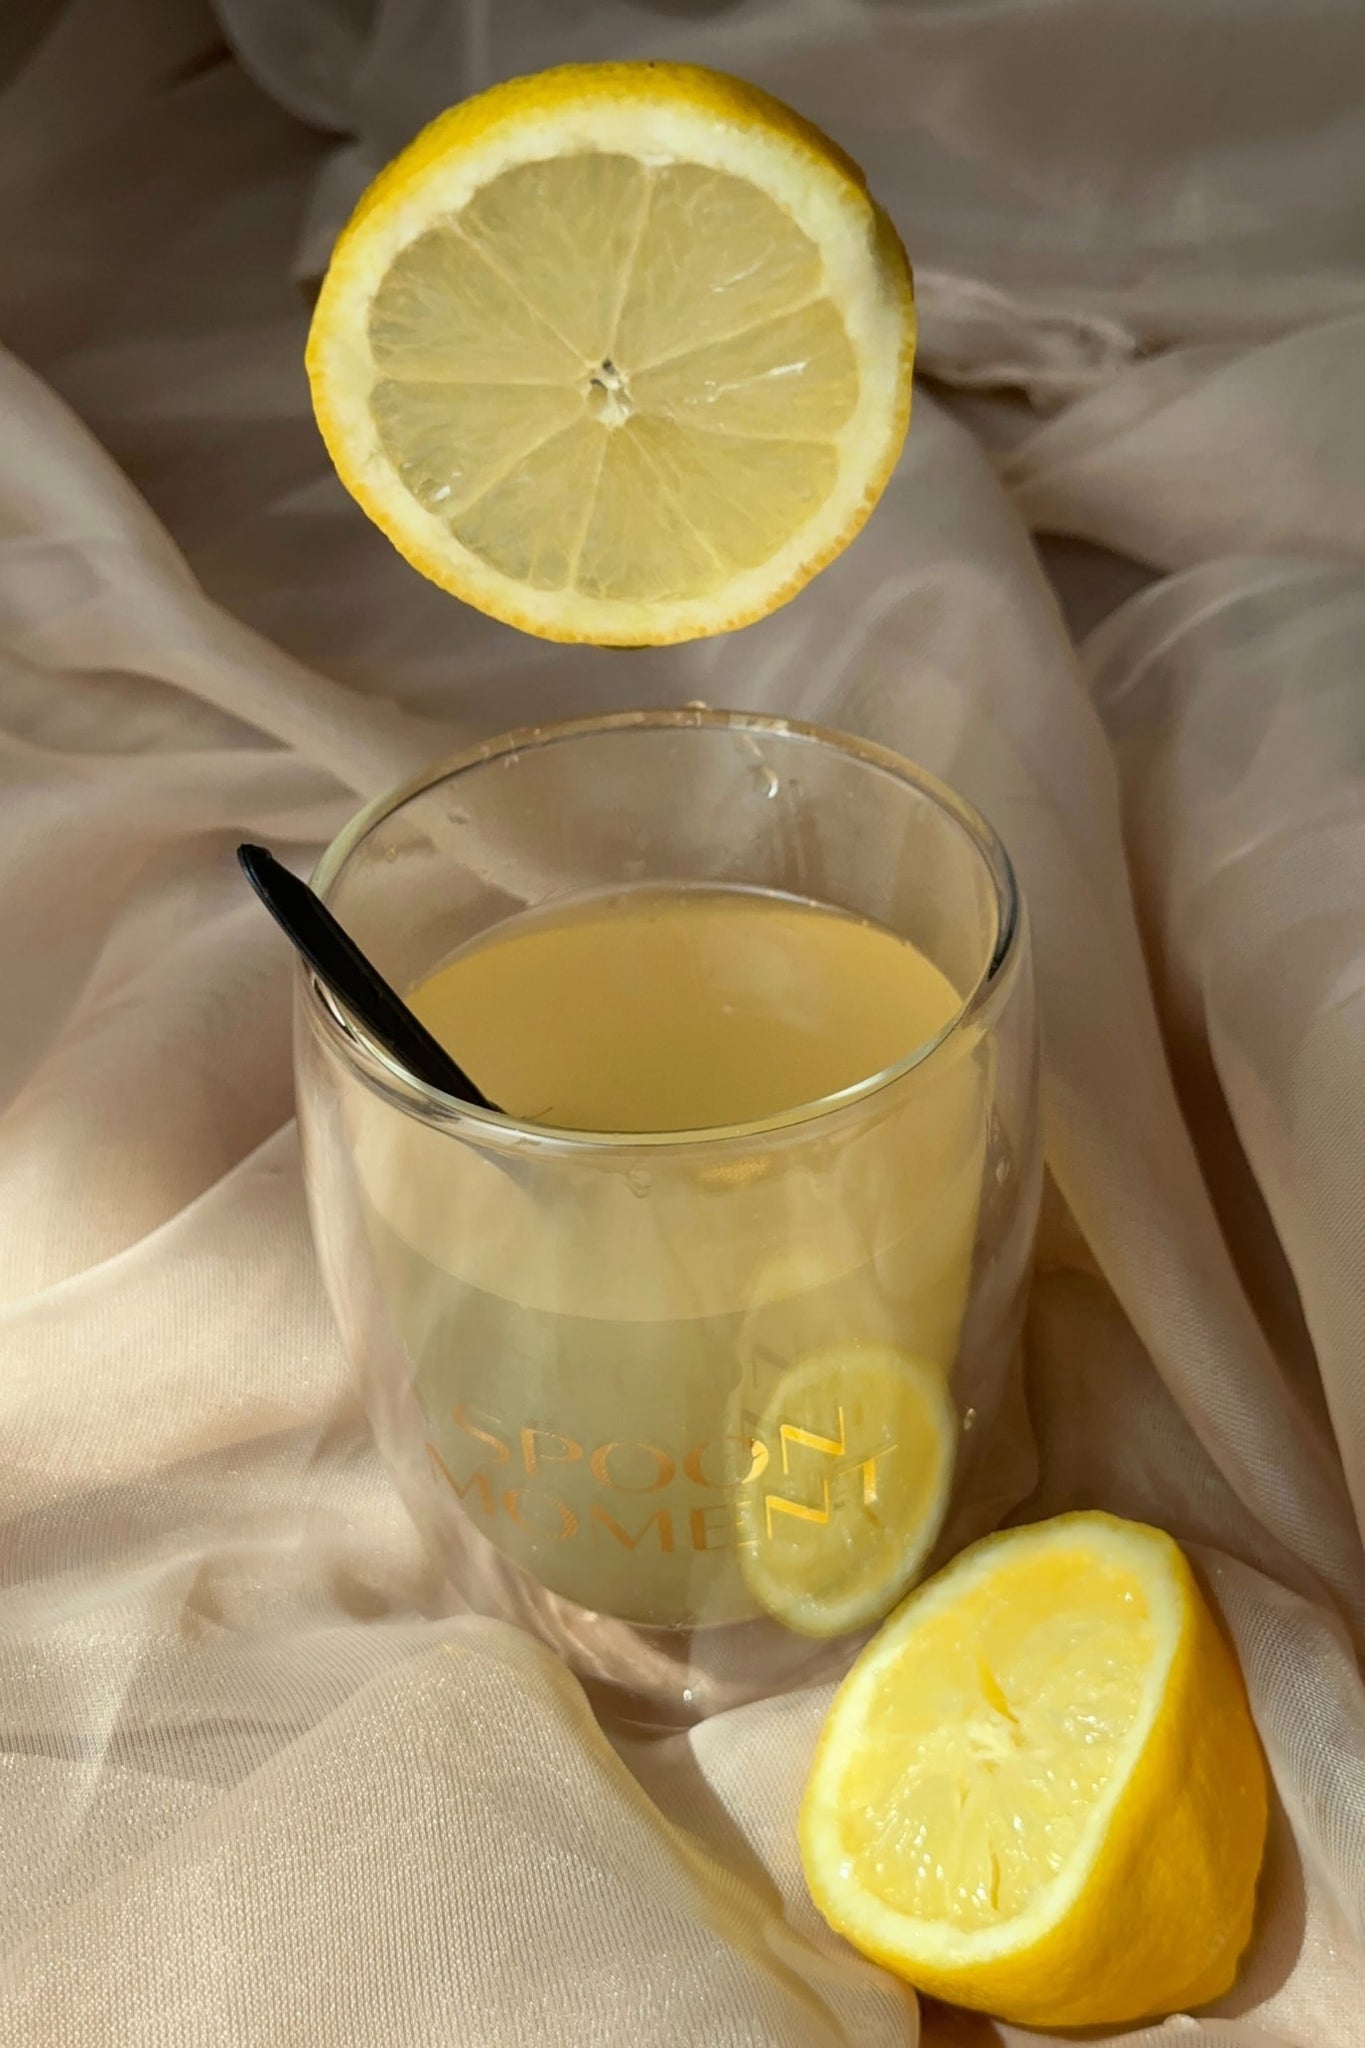 Verfris jezelf met dit Spicy Ginger & Lemon sparkling iced tea recept! - Spoon Moment